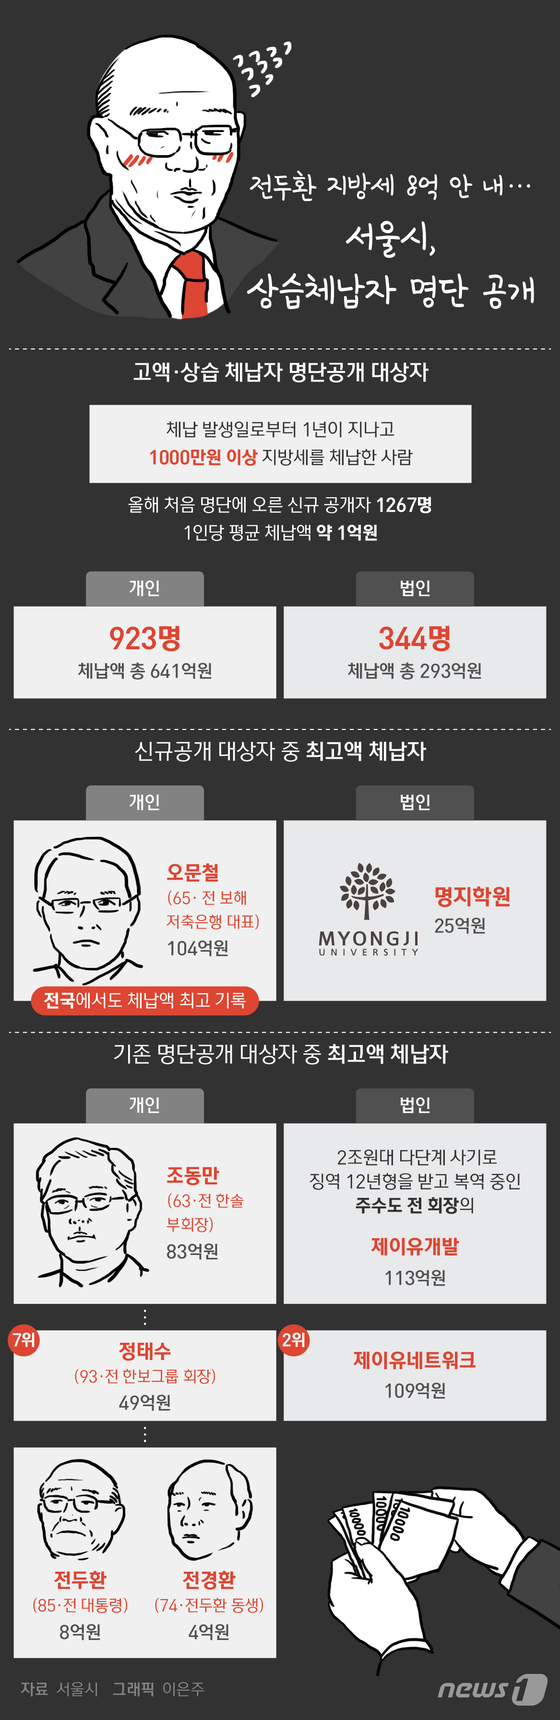 [그래픽뉴스] 전두환 지방세 8억 안내…서울시 상습체납자 명단공개